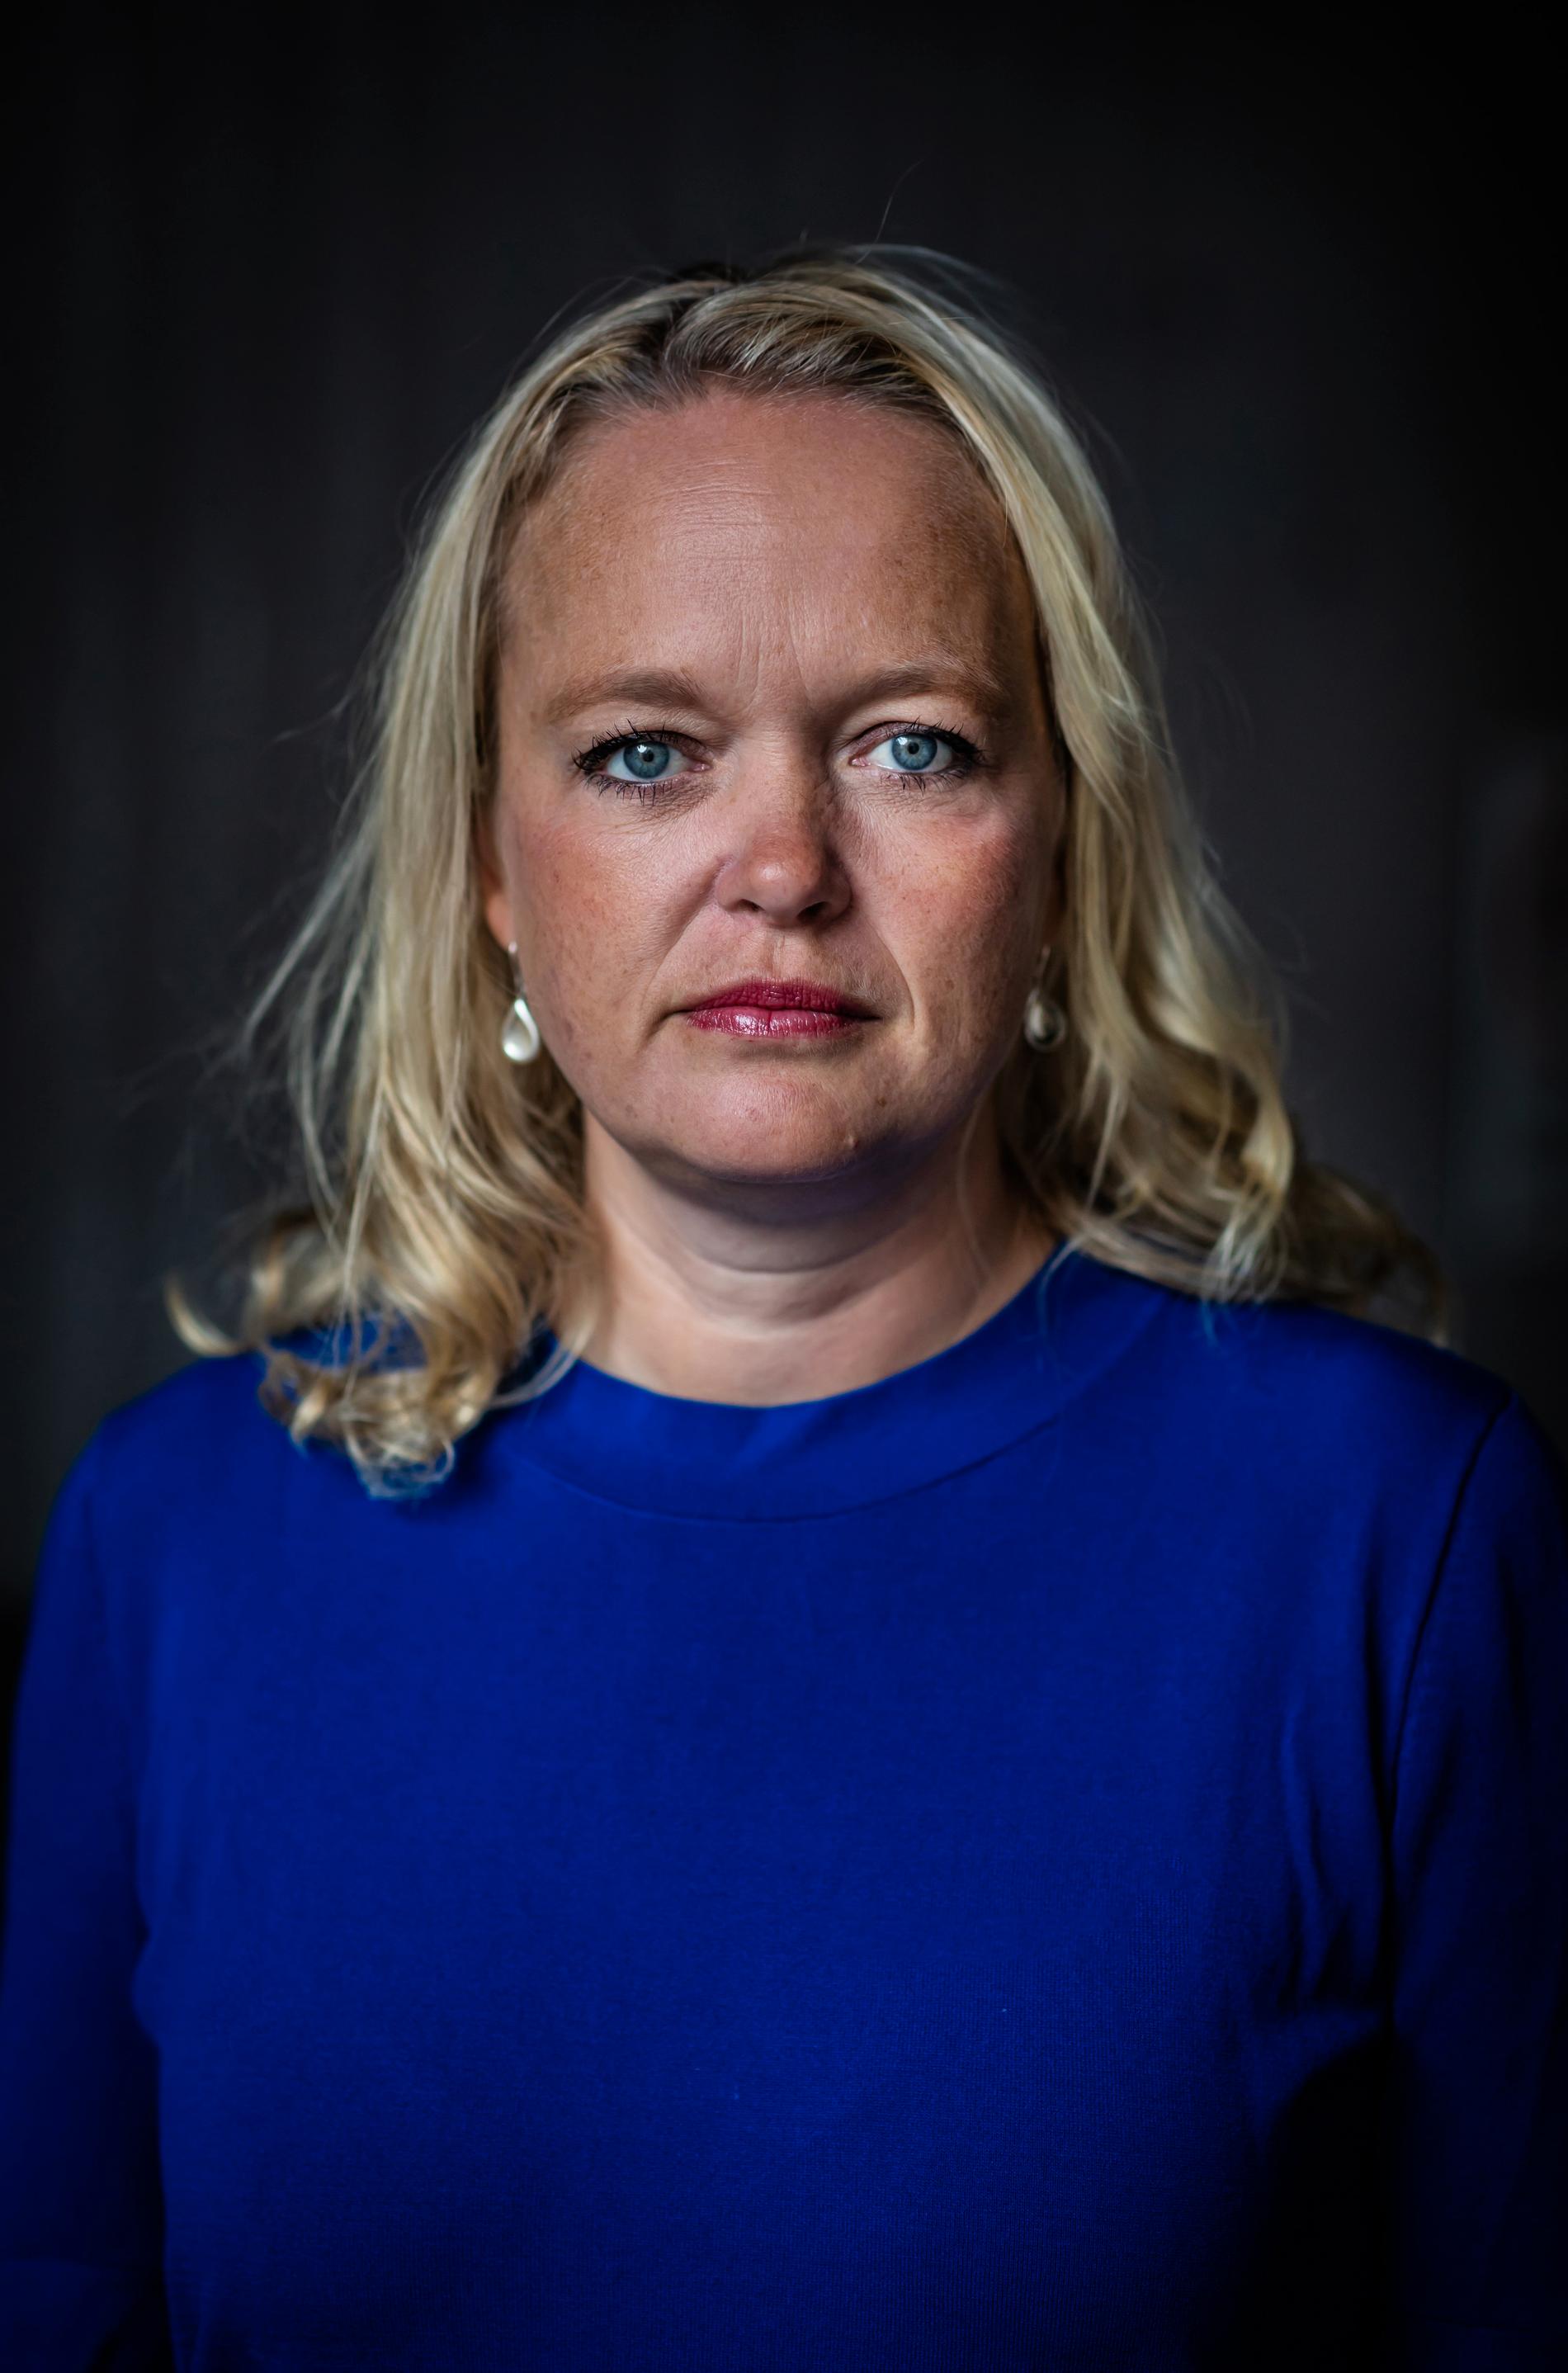 ECPAT Sveriges generalsekreterare Anna Hildingson Boqvist ser en ökning av utsatthet för barn på nätet under coronapandemin.